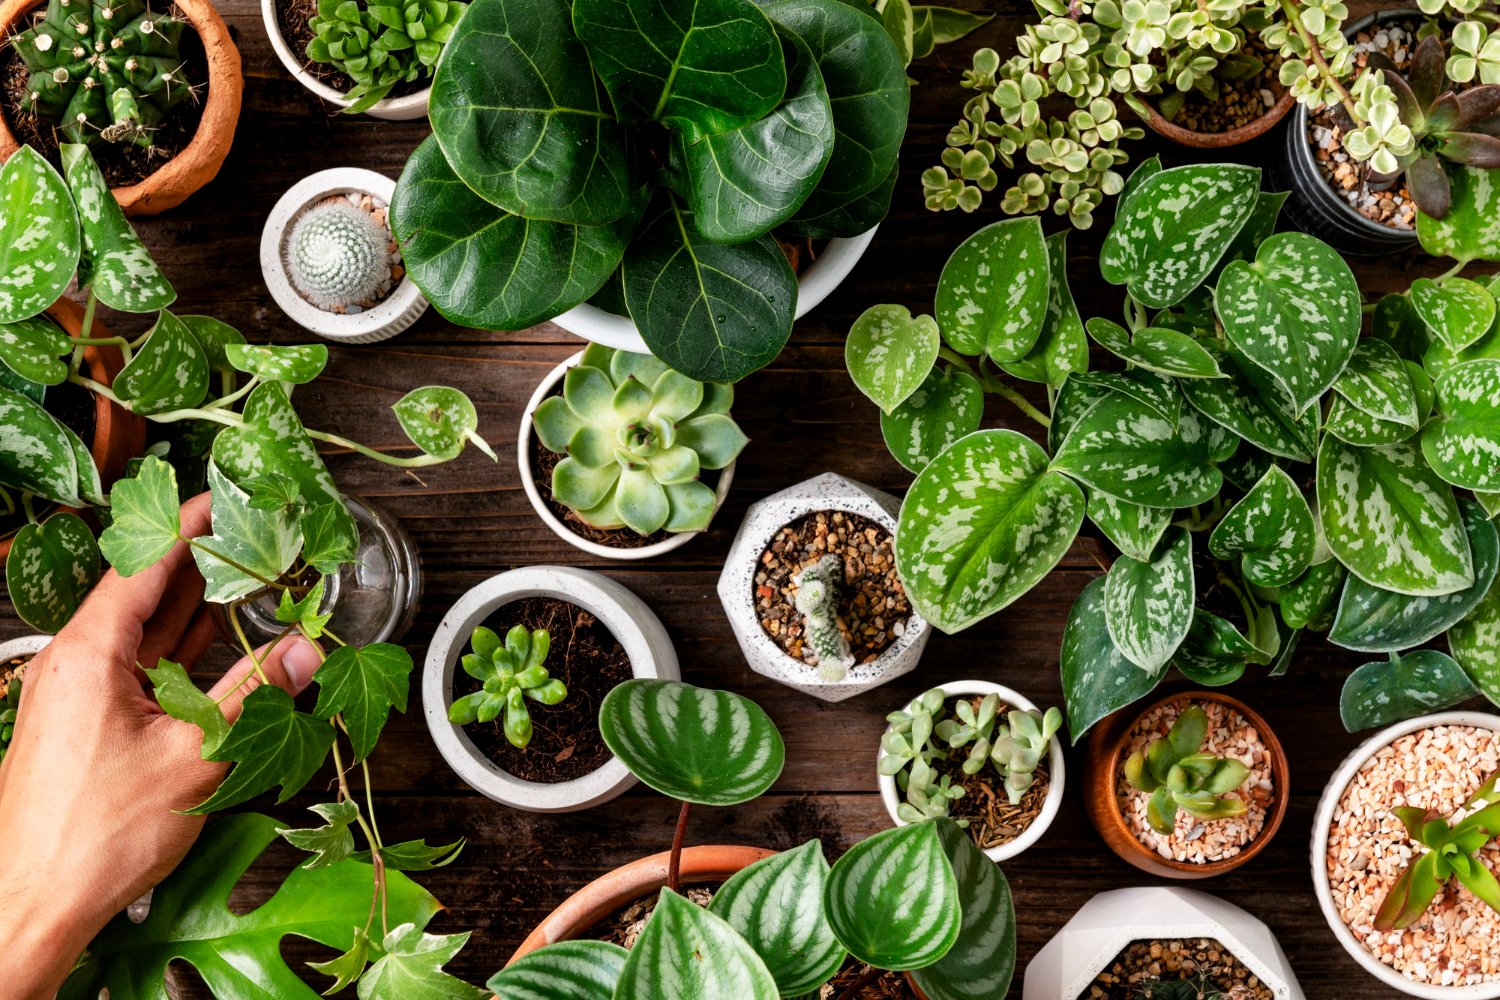 The Medicinal plants